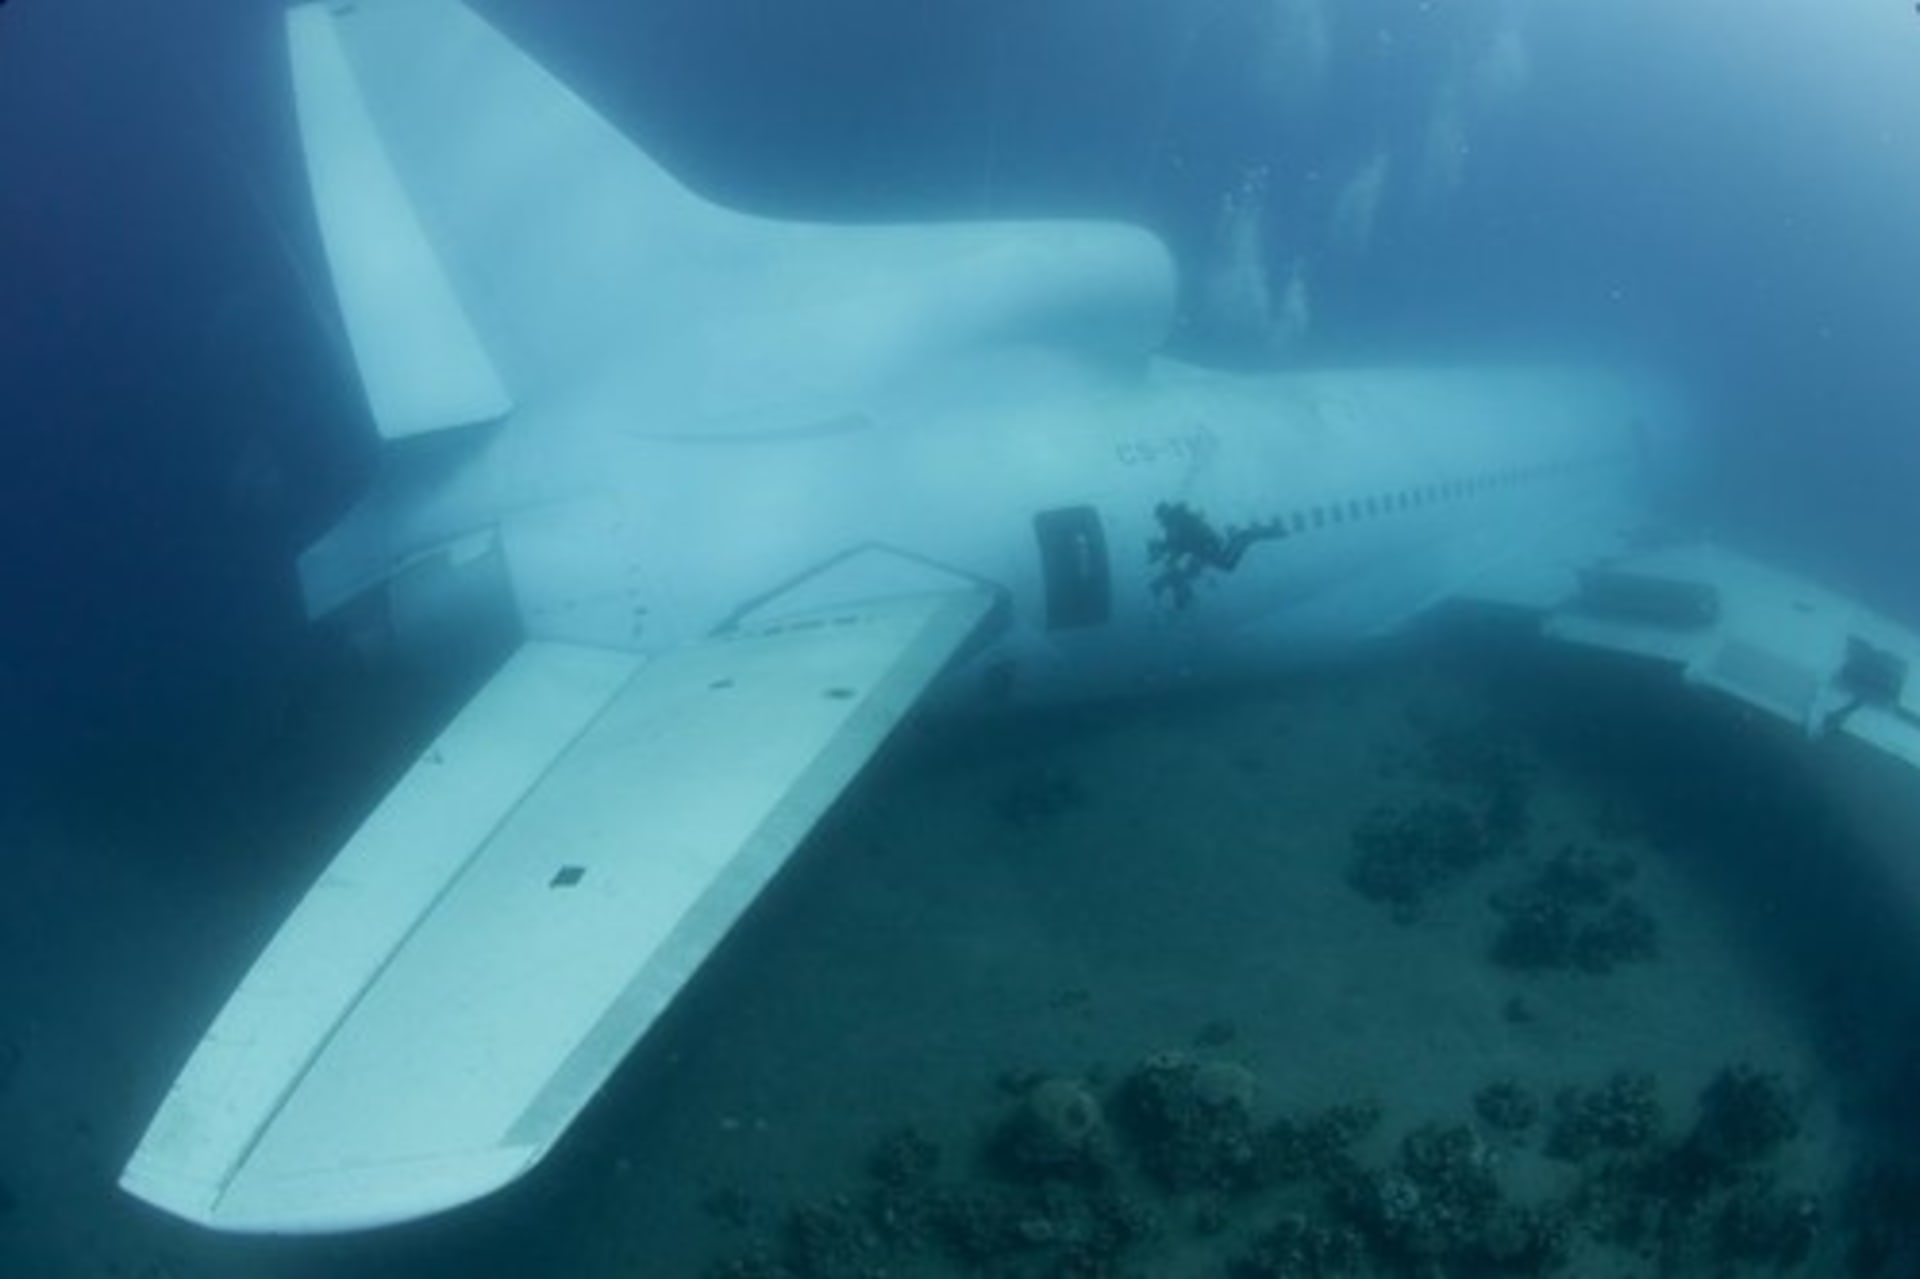 Takhle vypadal Lockheed L-1011 TriStar na dně Akabského zálivu krátce po potopení.